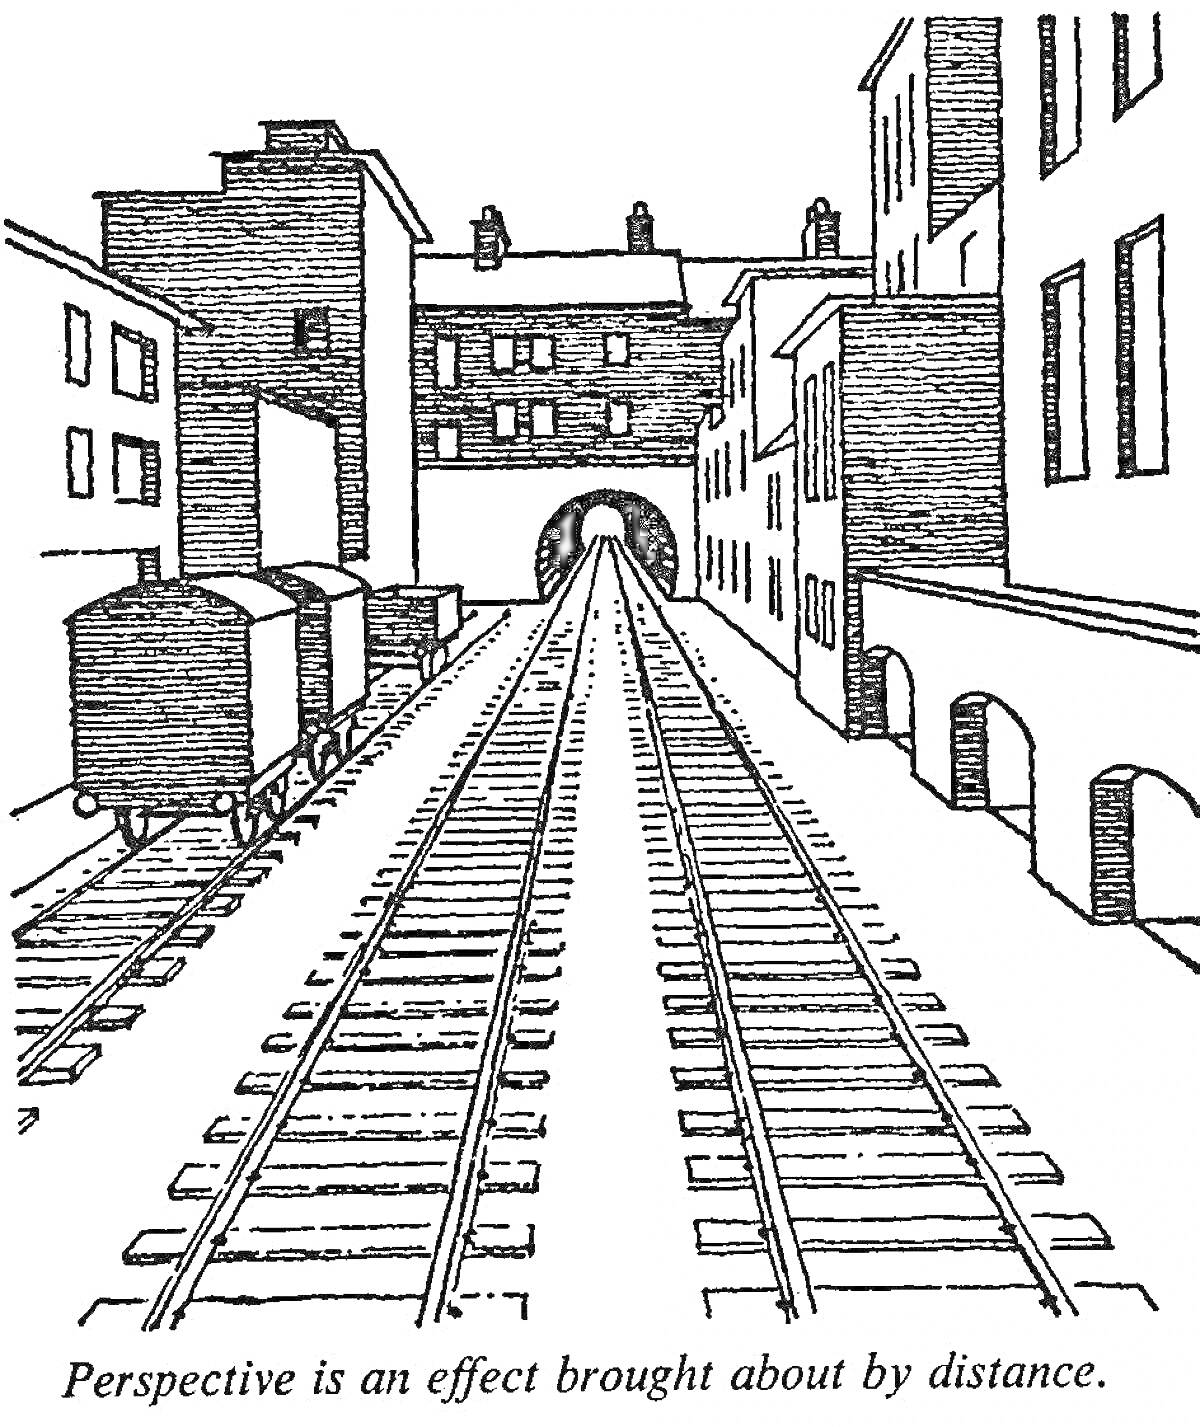 Вокзал с путями и вагонами, уходящими в туннель на фоне зданий